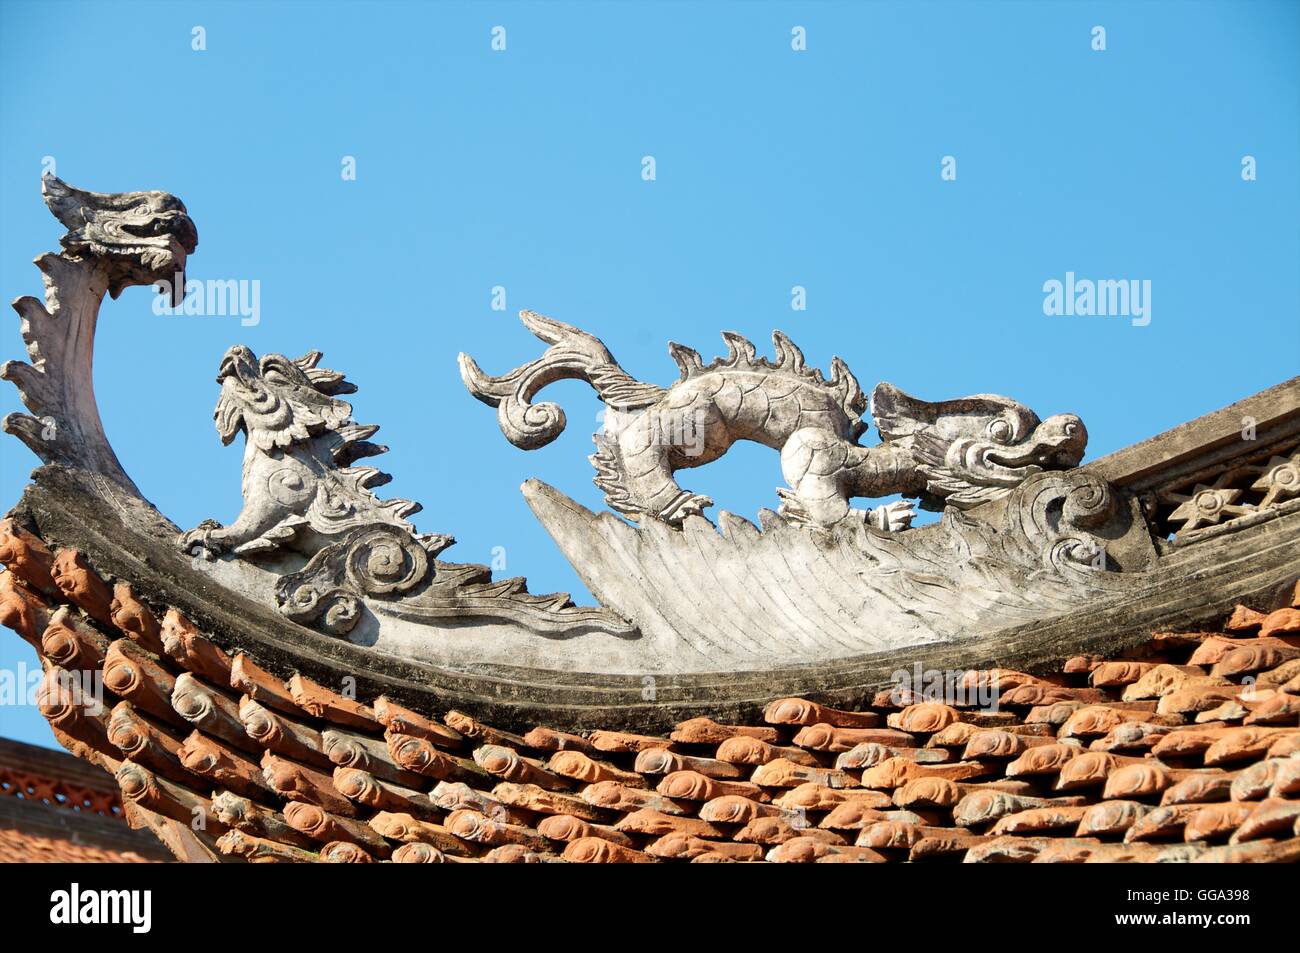 Dettaglio della decorazione a stucco sul tetto del tempio di Duong Lam, Vietnam. Foto Stock